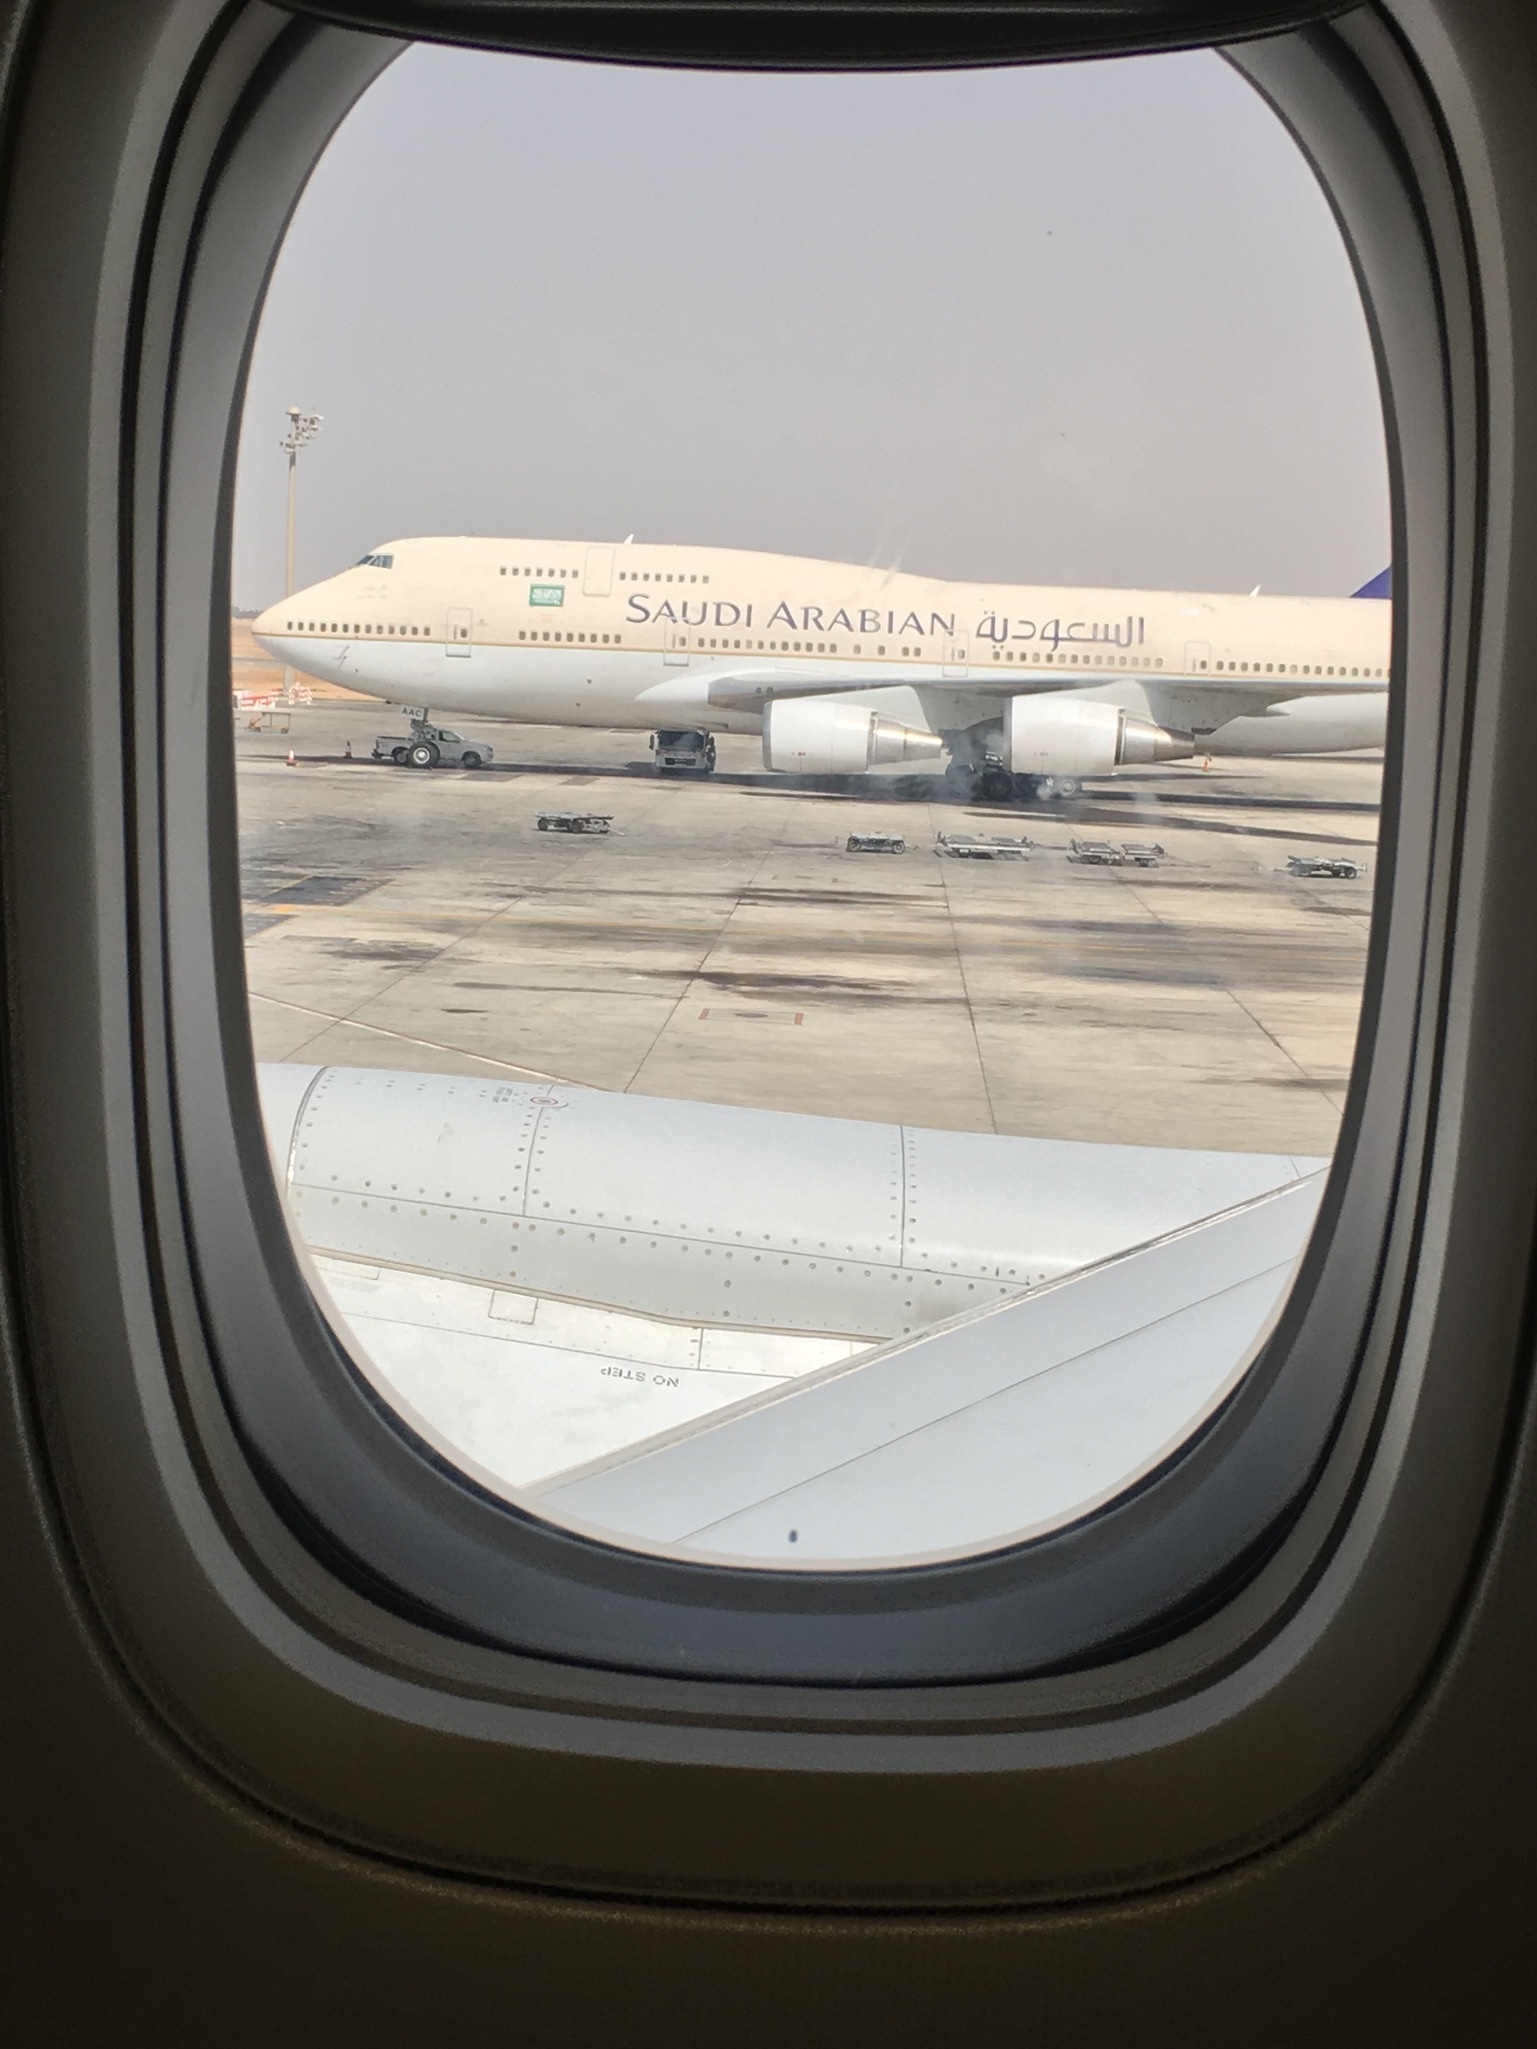 Saudi Arabian Airlines, Planes, Doors Wide Open, Spotting, 1540x2050 HD Handy